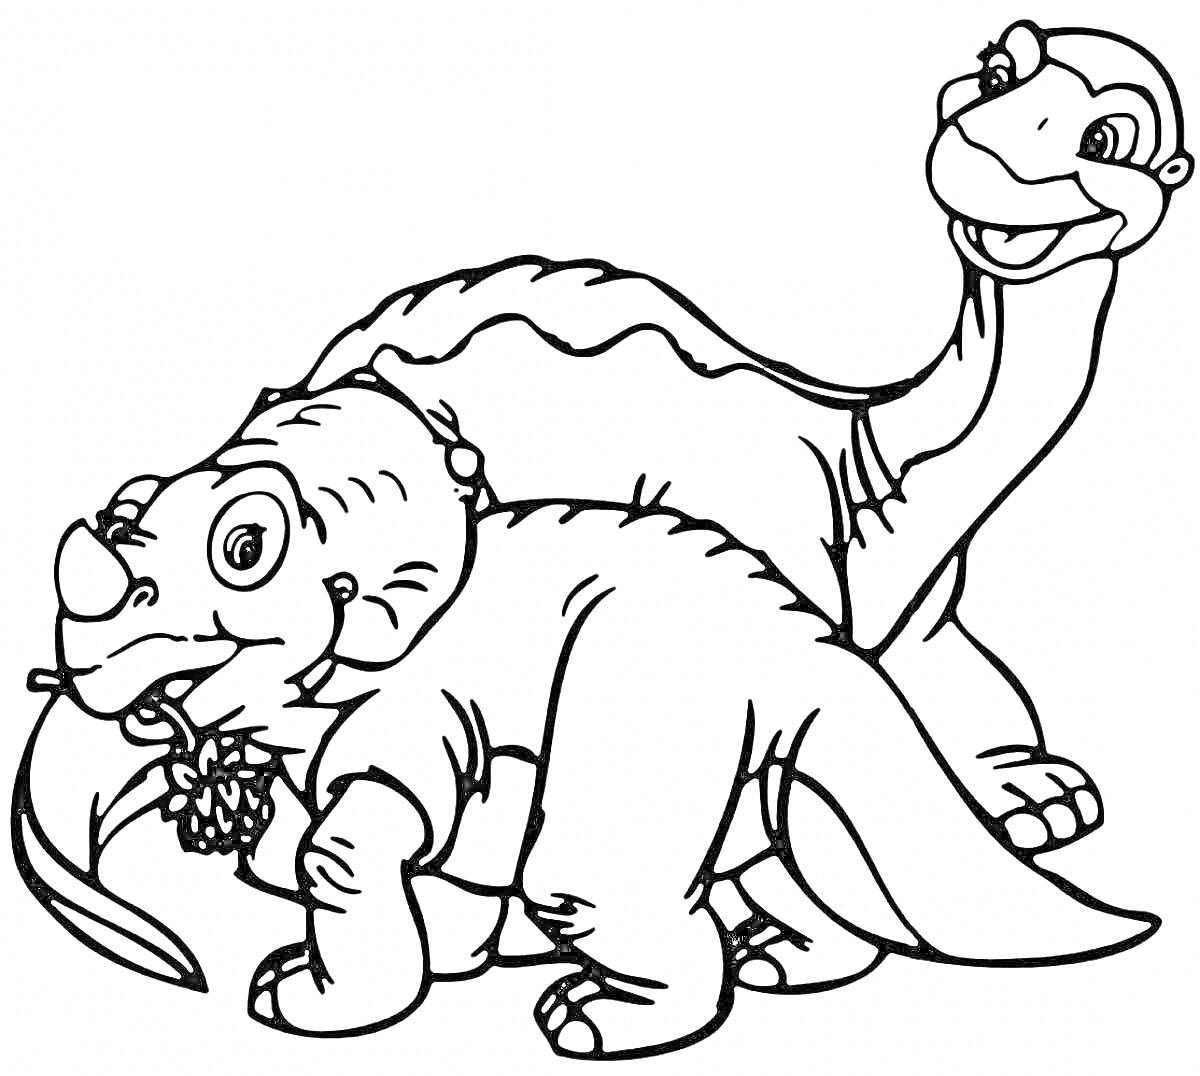 Раскраска Два динозавра - один с рогом и цветком в пасти, другой с длинной шеей, улыбаются